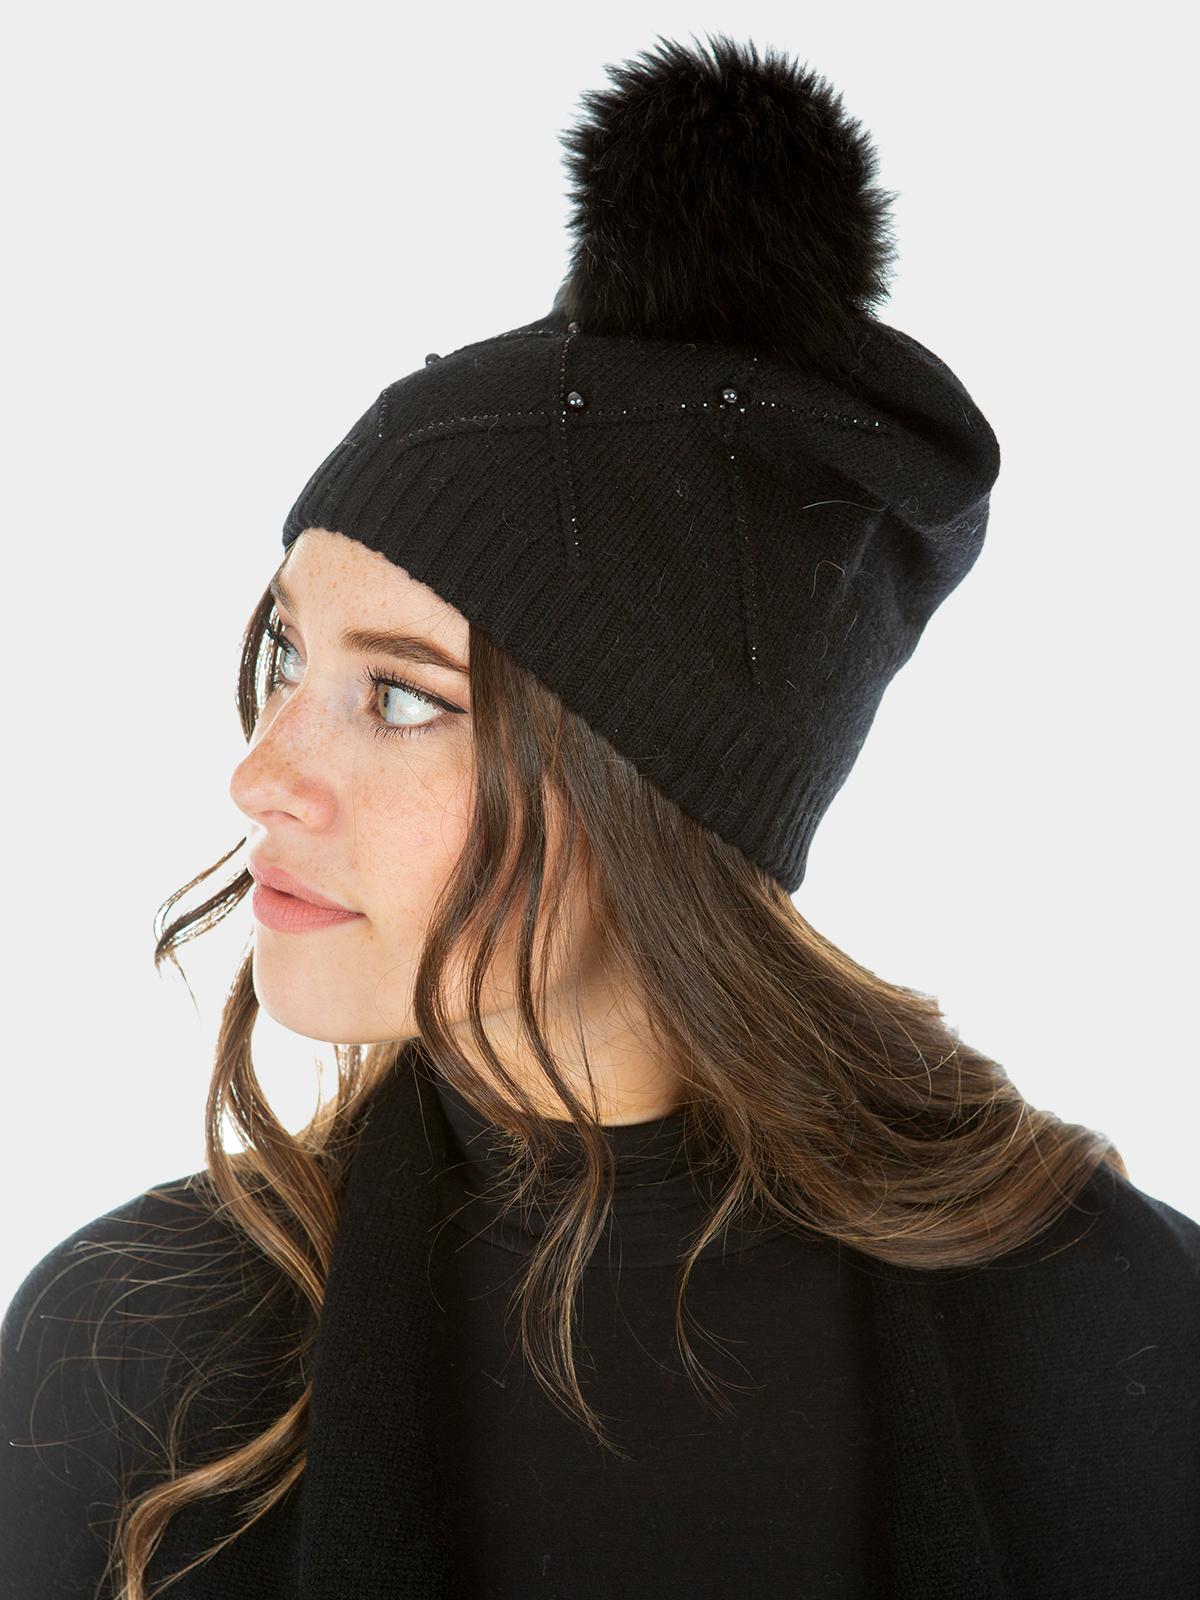 Woman's Black Knit Fabric Hat with Fox Fur Pom-Pom